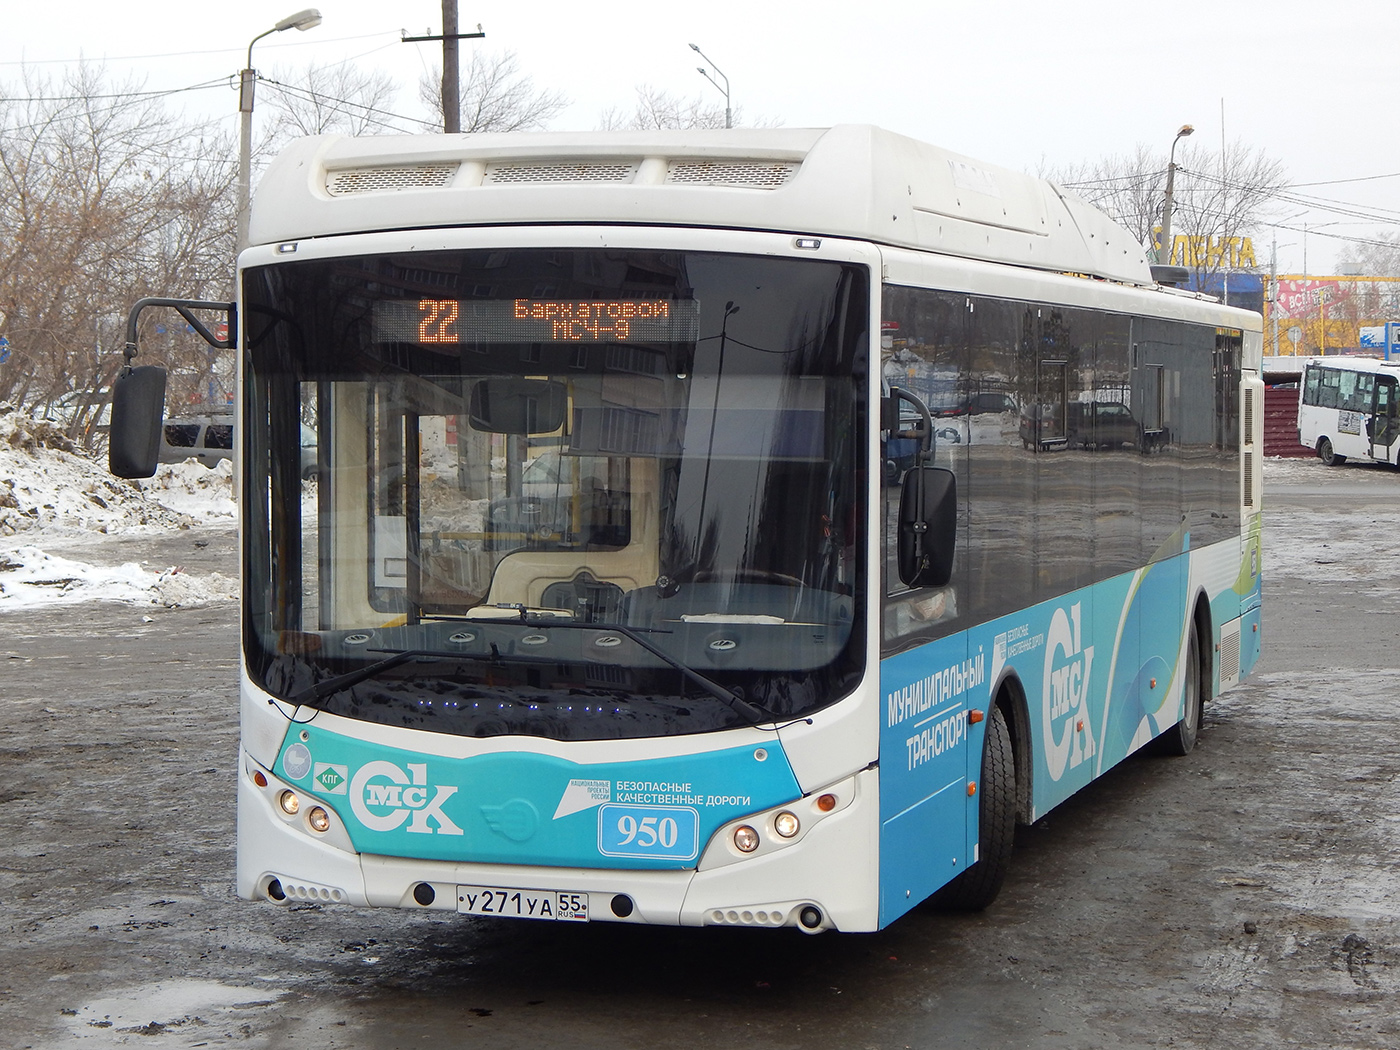 Omsk region, Volgabus-5270.G2 (CNG) # 950